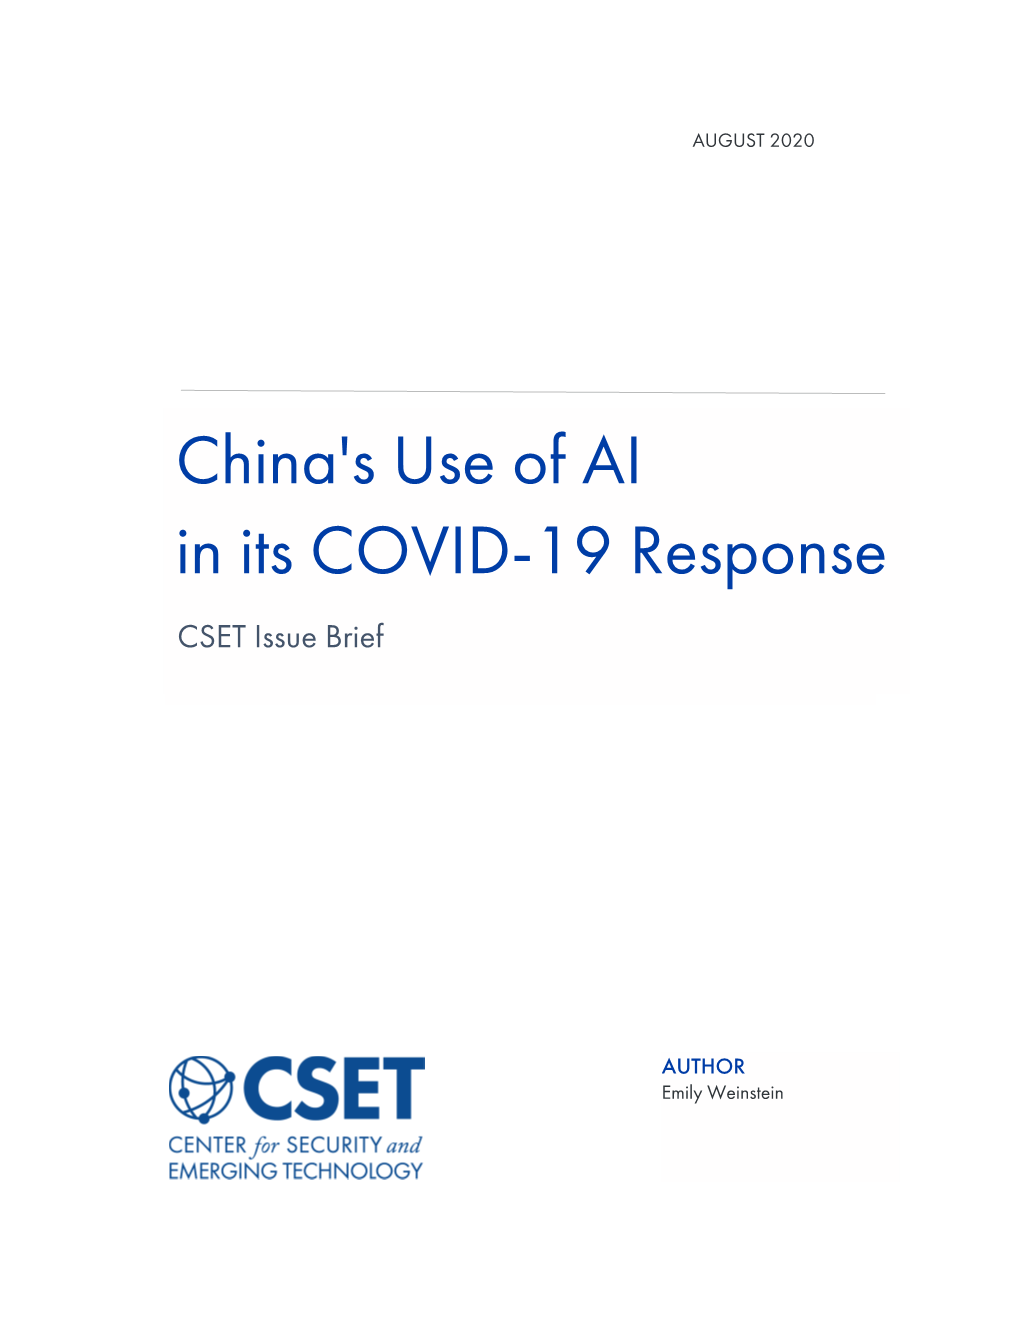 CSET Issue Brief